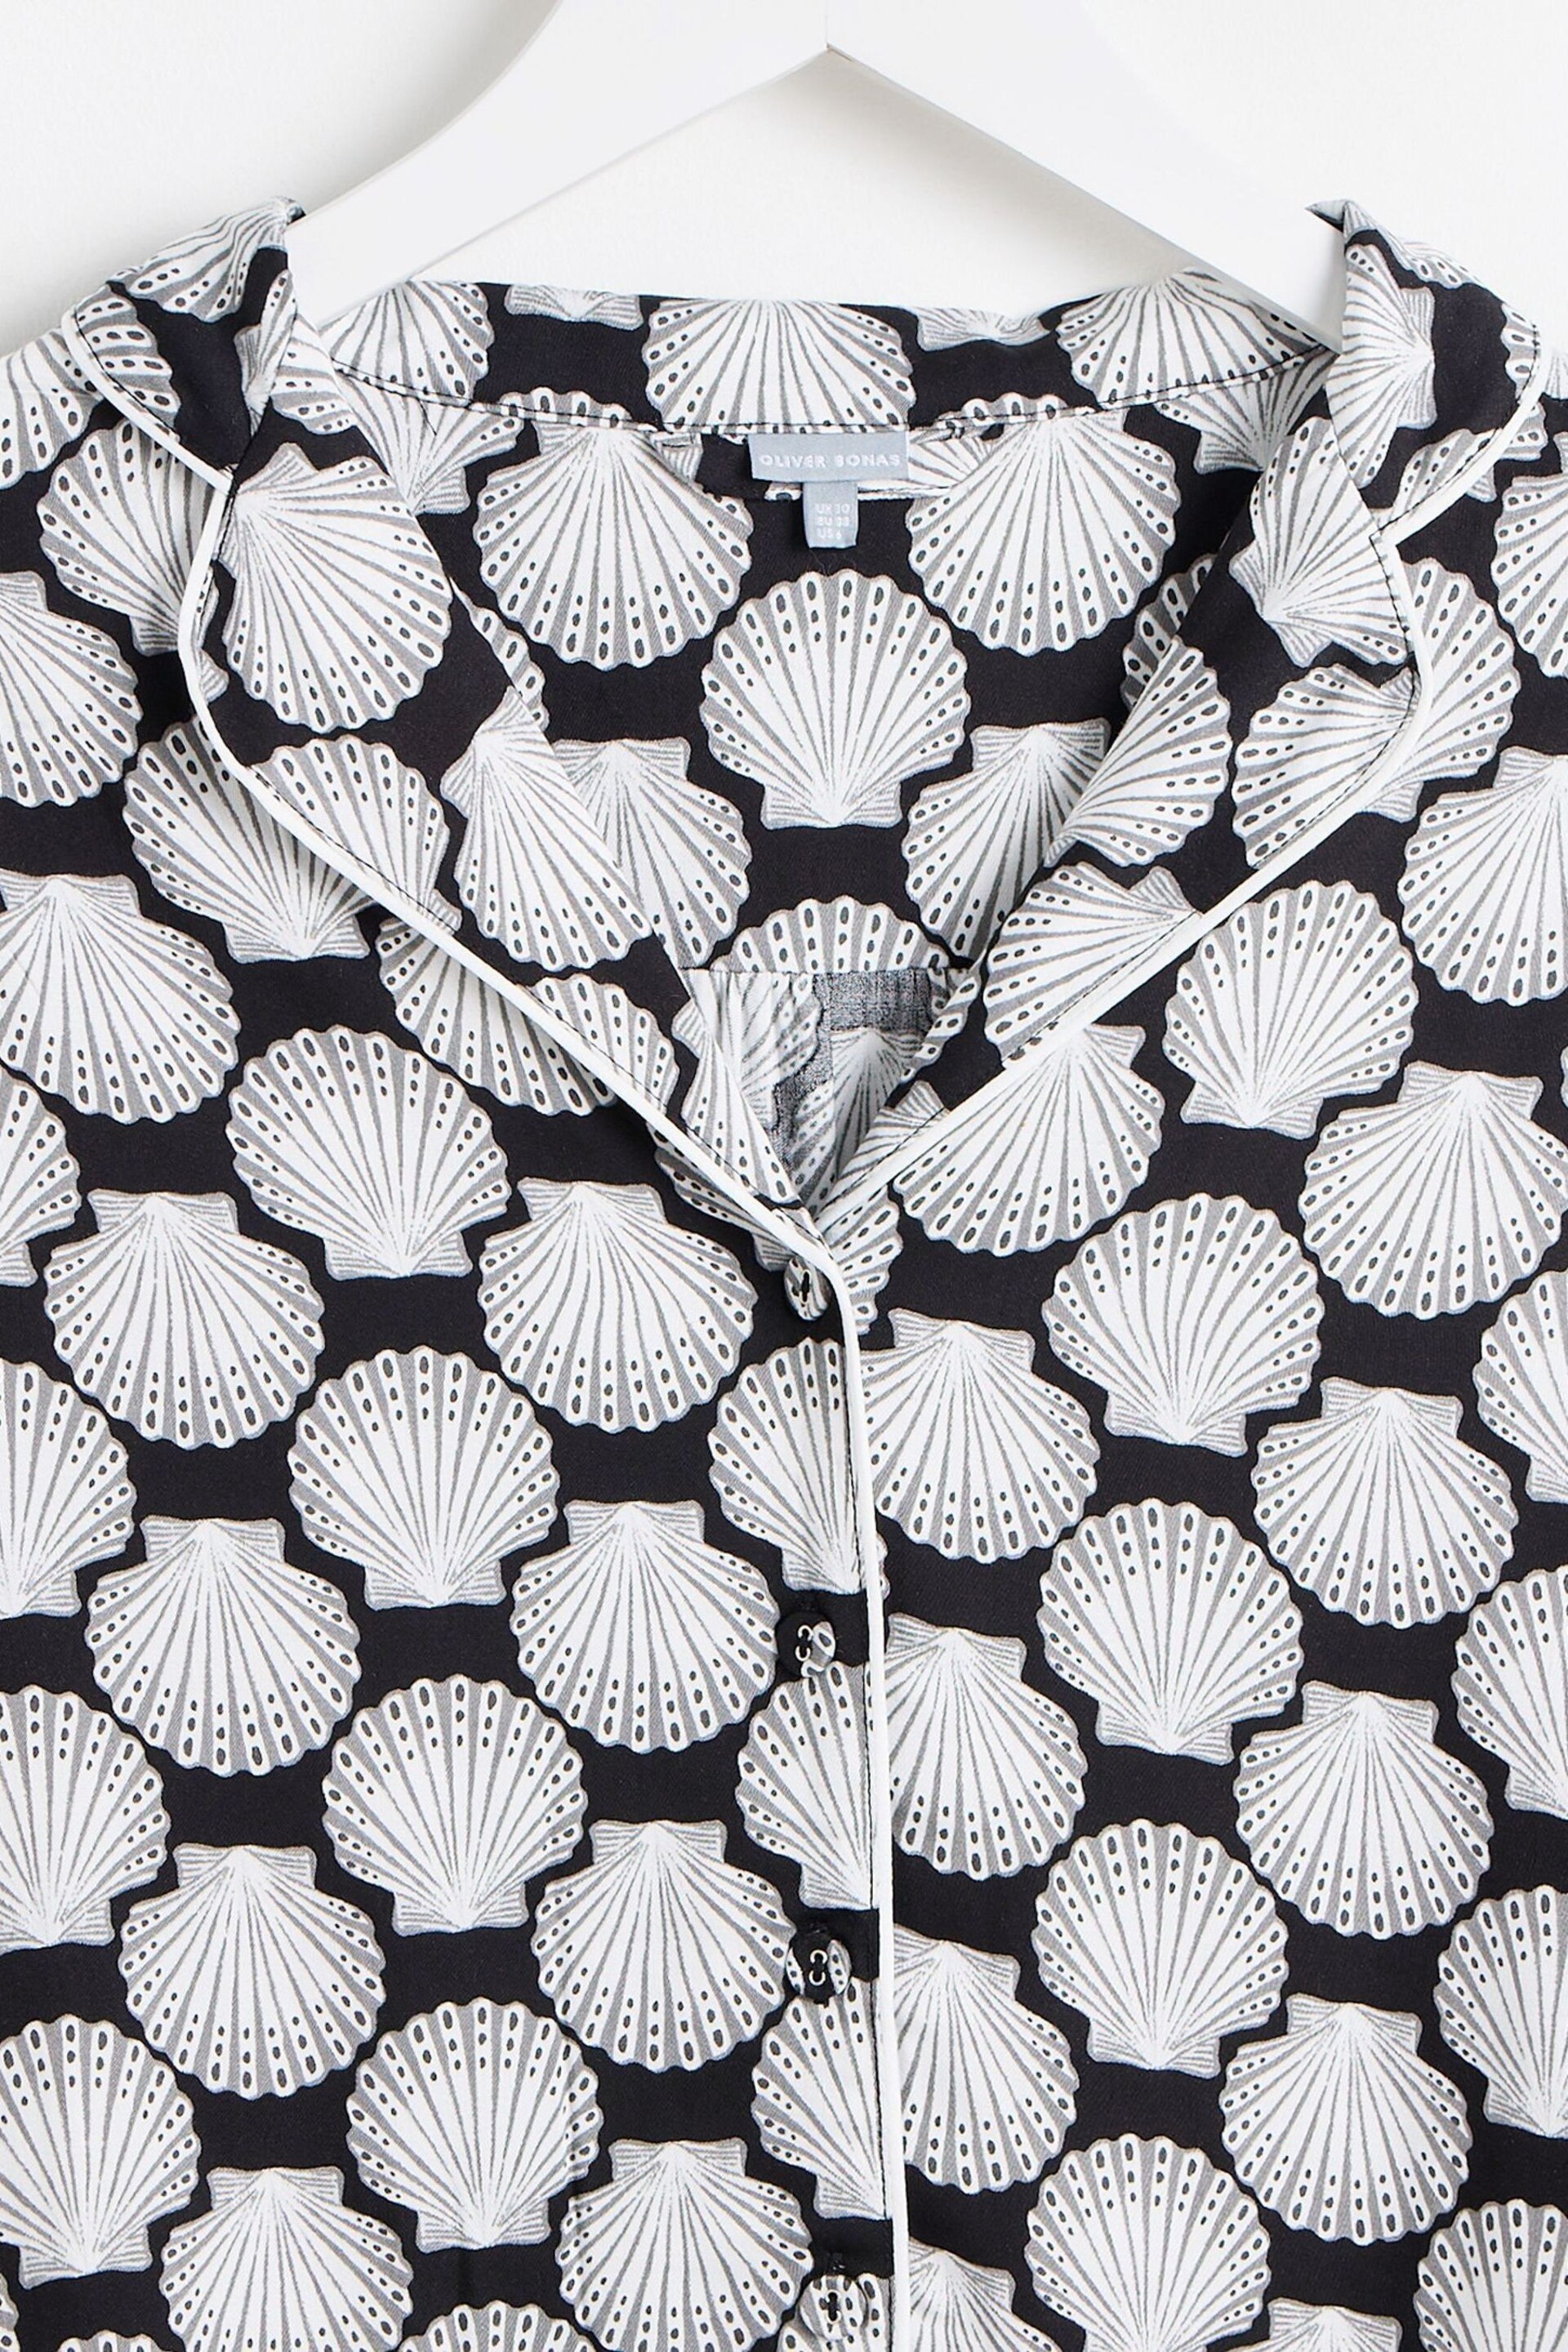 Oliver Bonas Black Shells Top and Shorts Pyjamas Set - Image 7 of 8